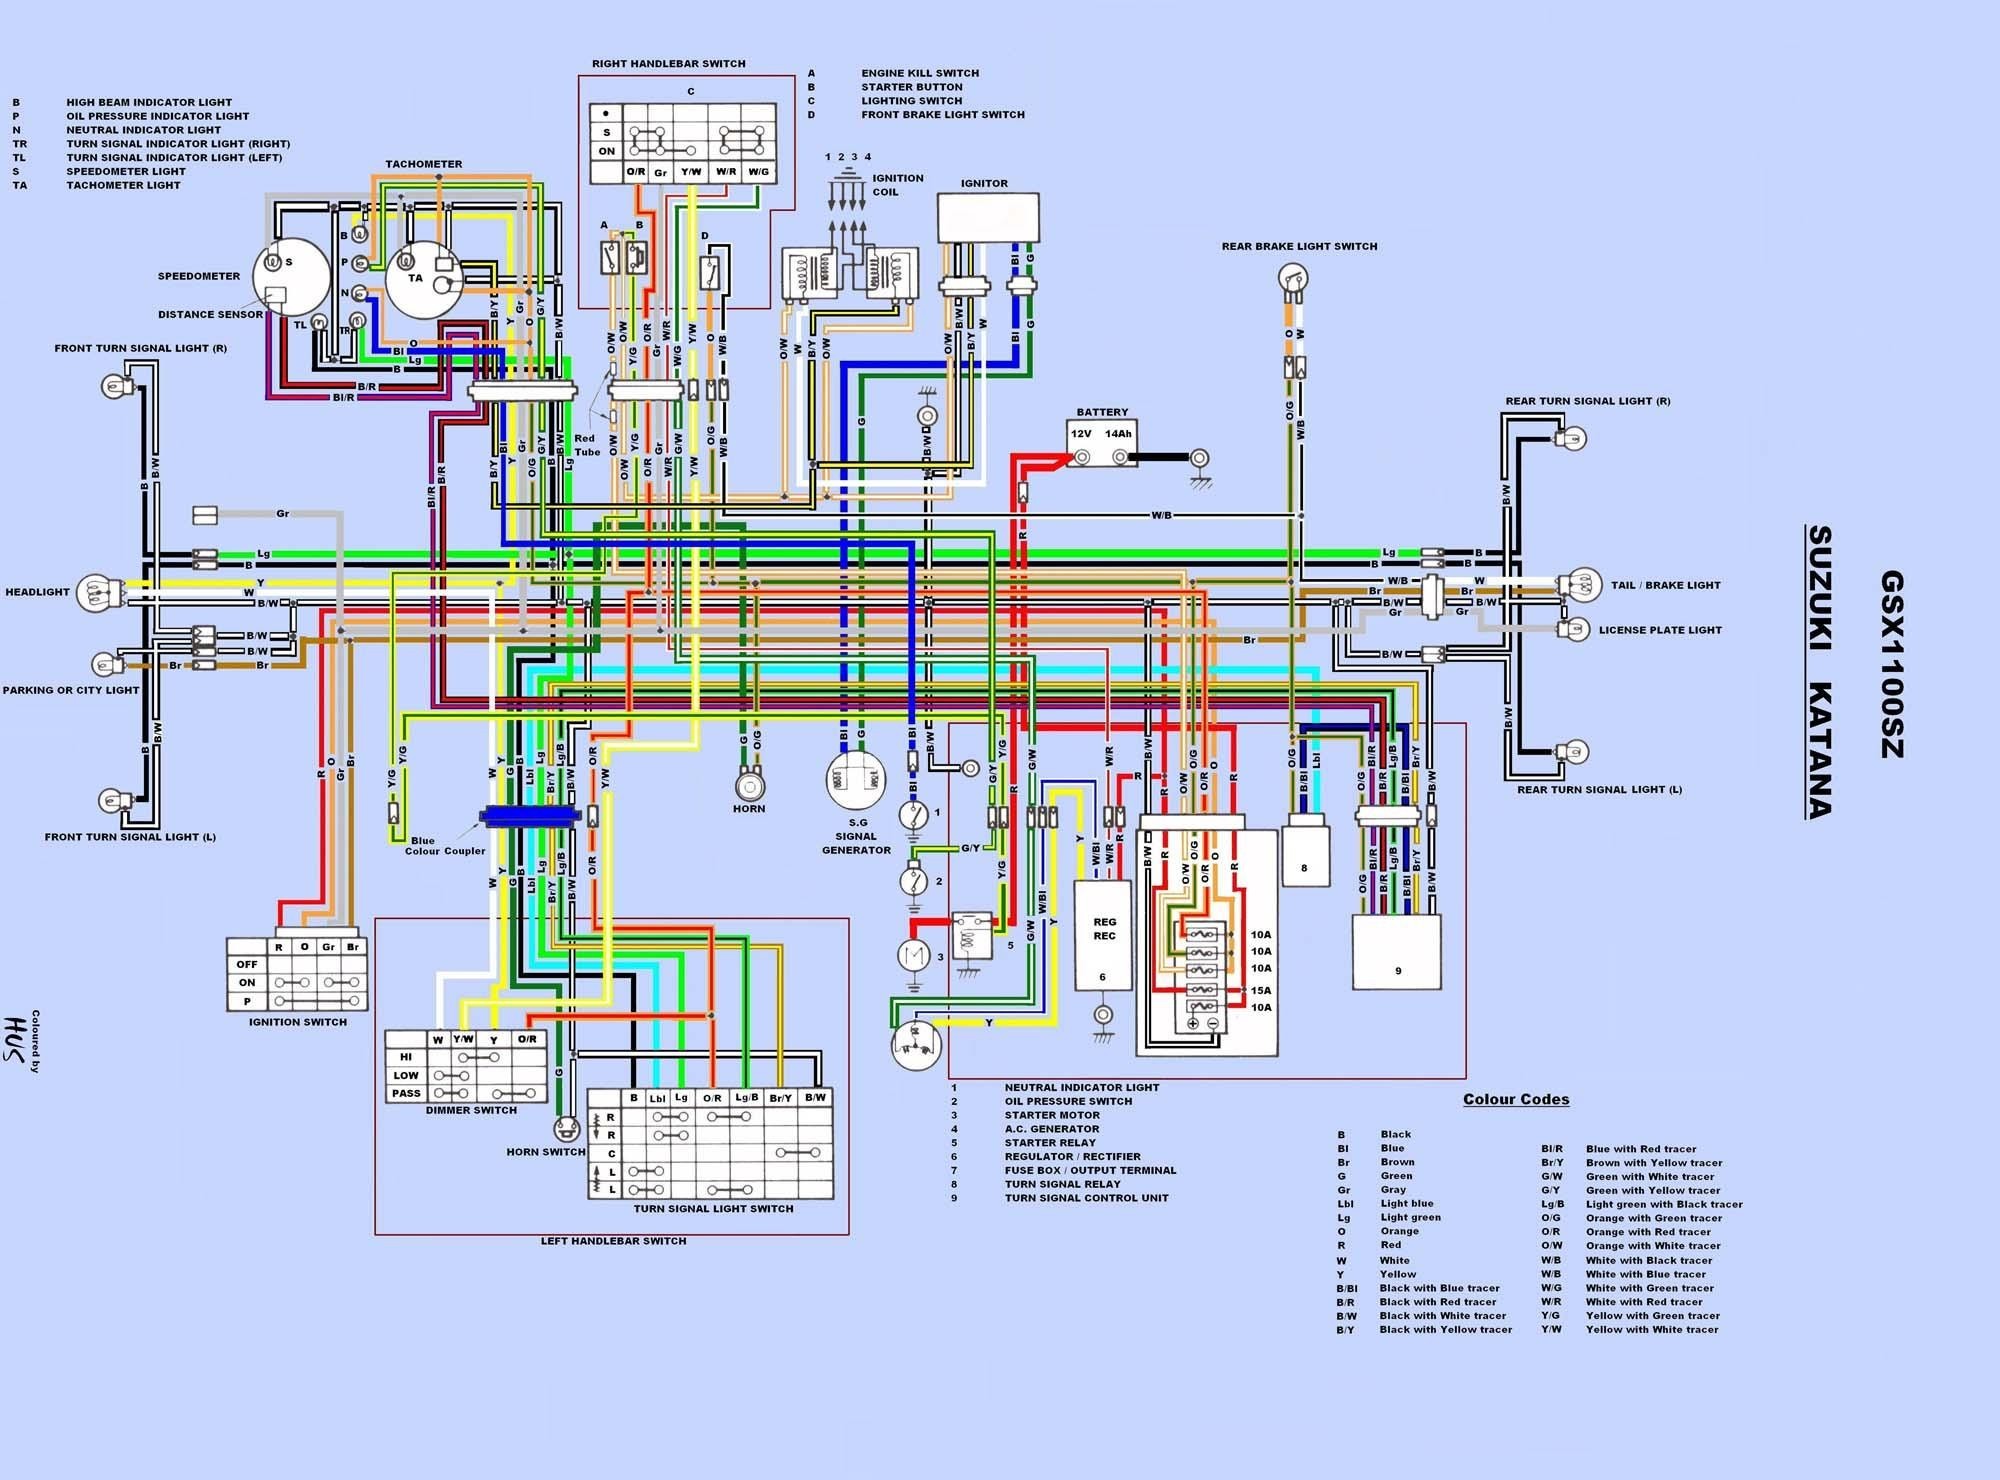 suzuki carry wiring diagram wiring diagram toolbox wiring diagram suzuki carry 1000 wiring diagrams konsult suzuki